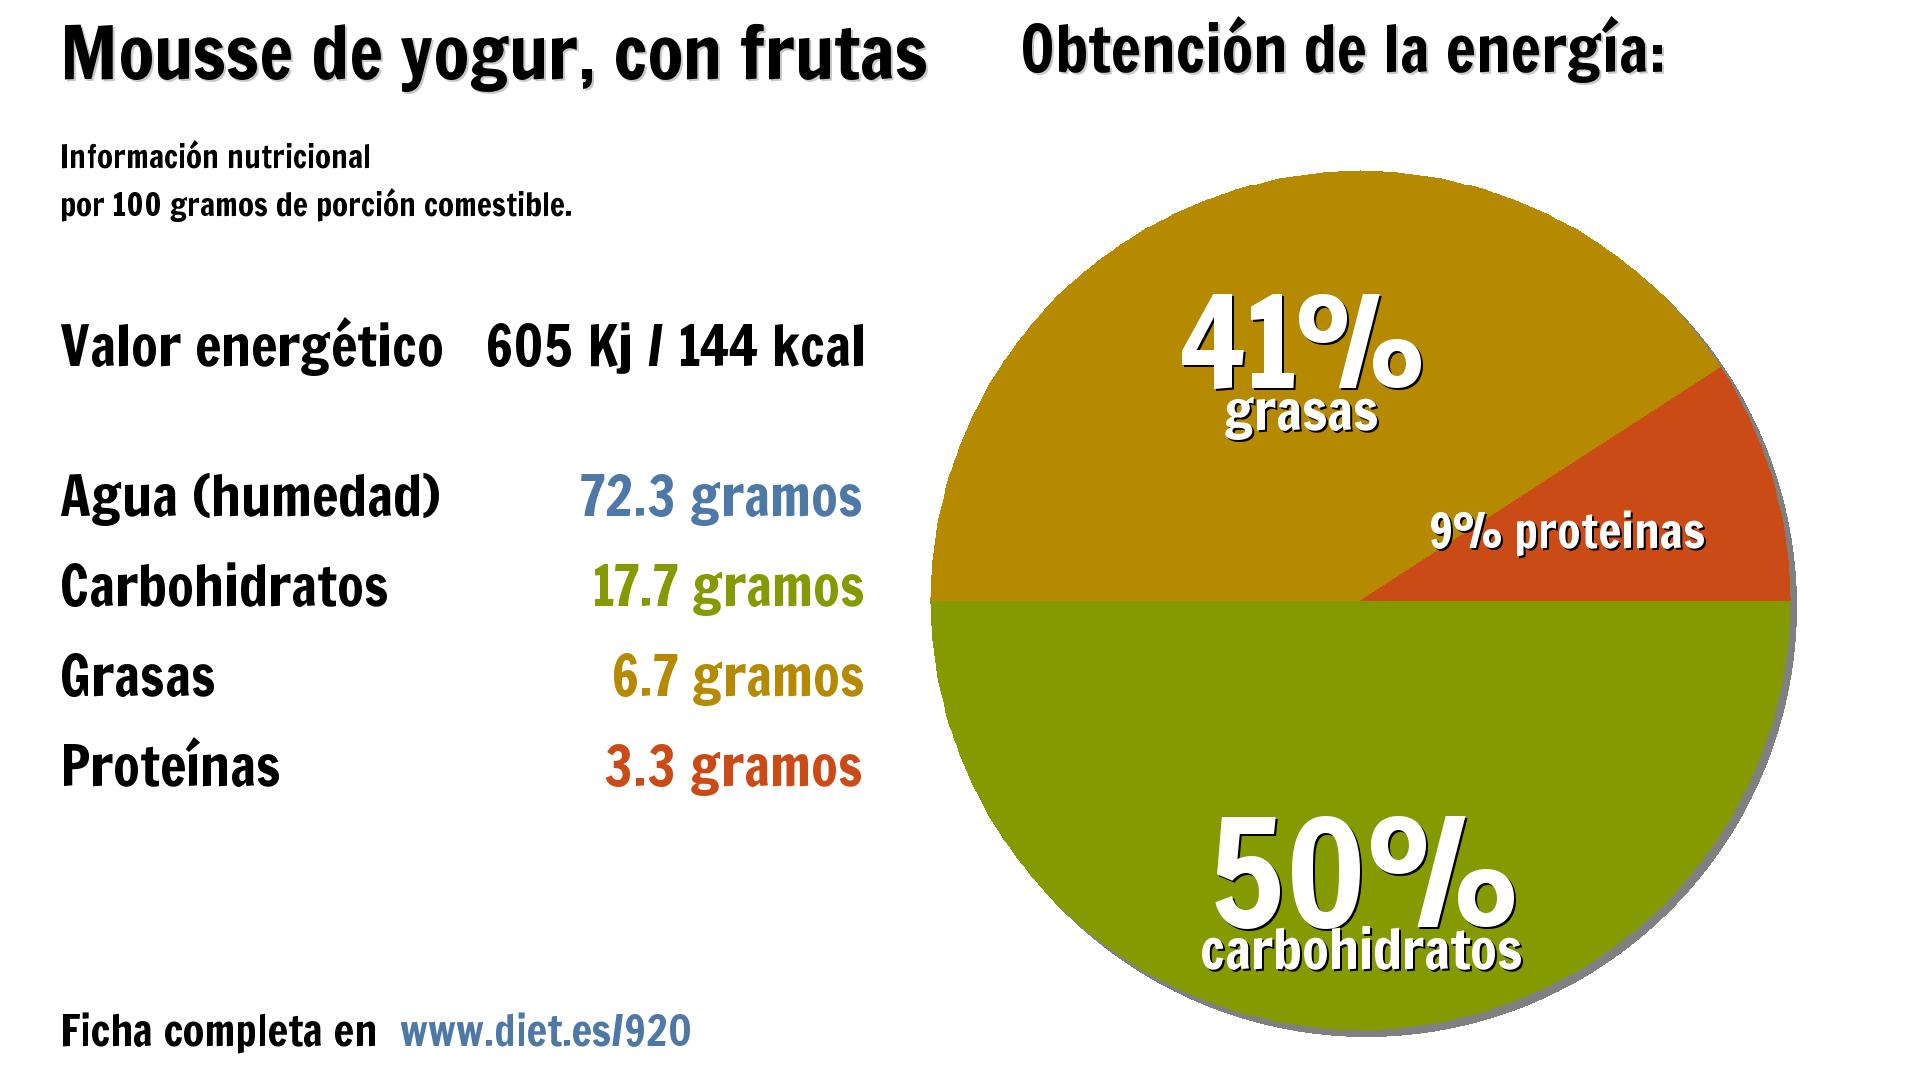 Mousse de yogur, con frutas: energía 605 Kj, agua 72 g., carbohidratos 18 g., grasas 7 g. y proteínas 3 g.